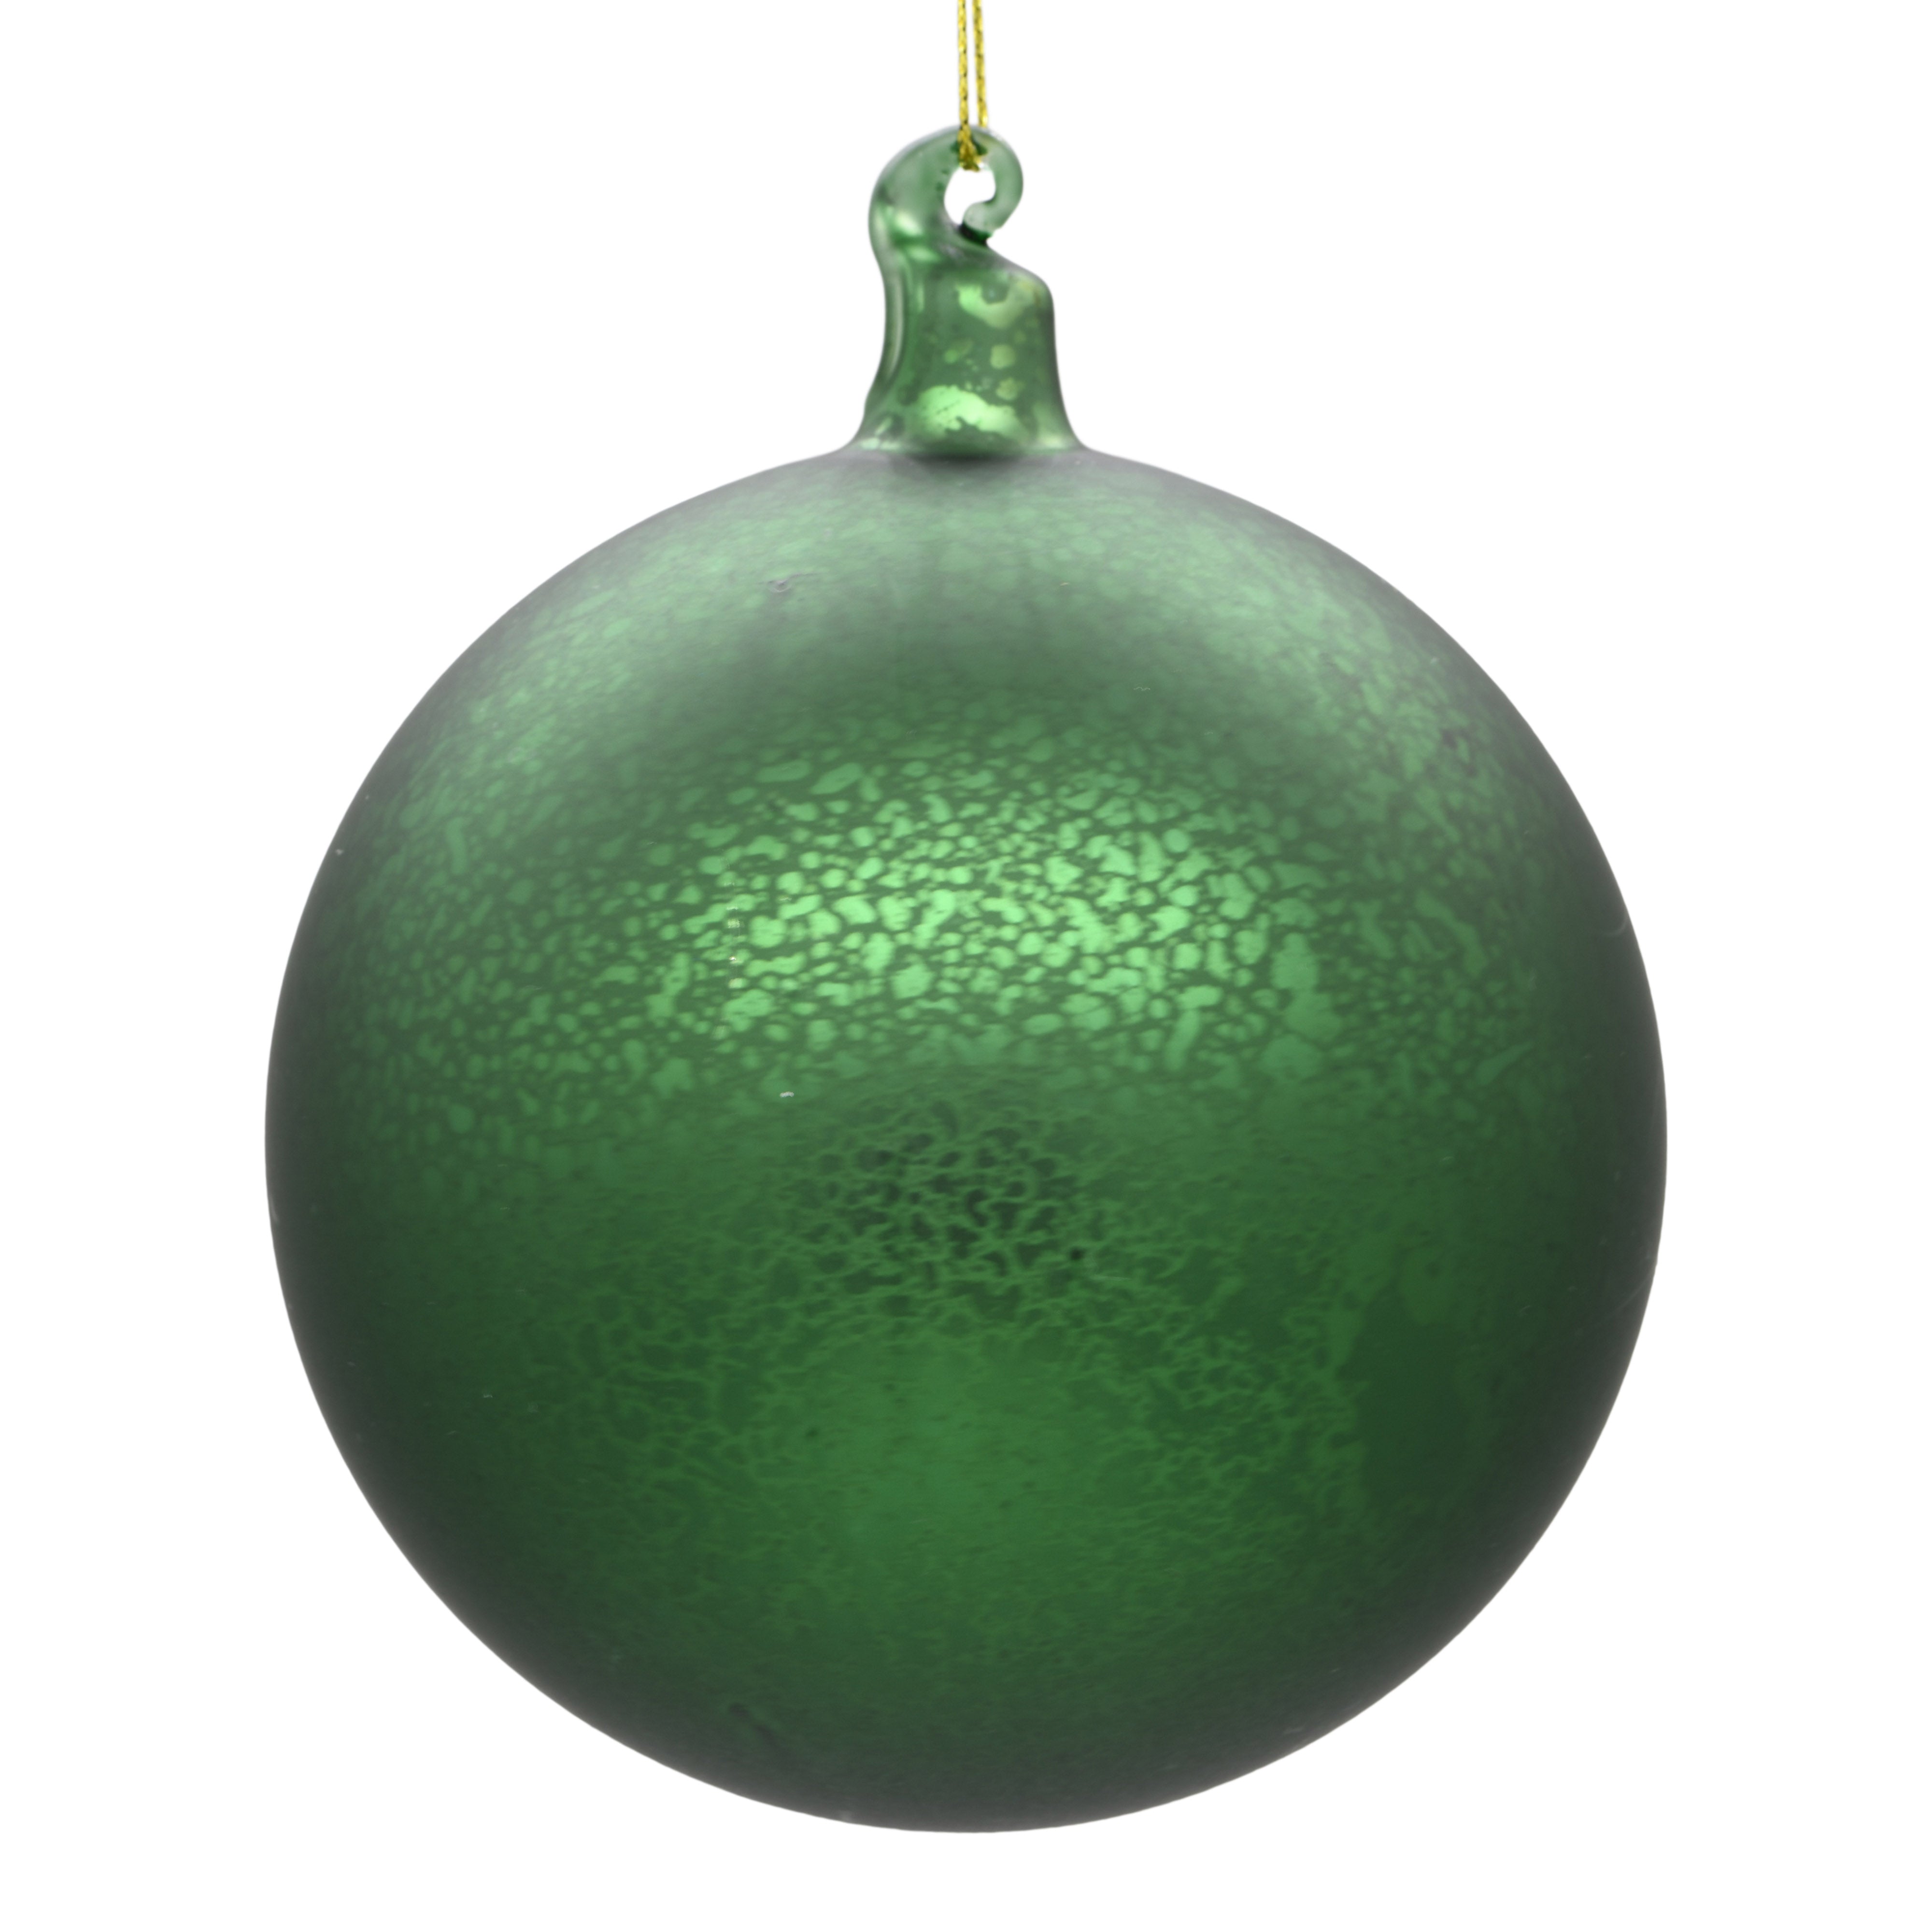 Large luxury green Christmas tree decoration on white background